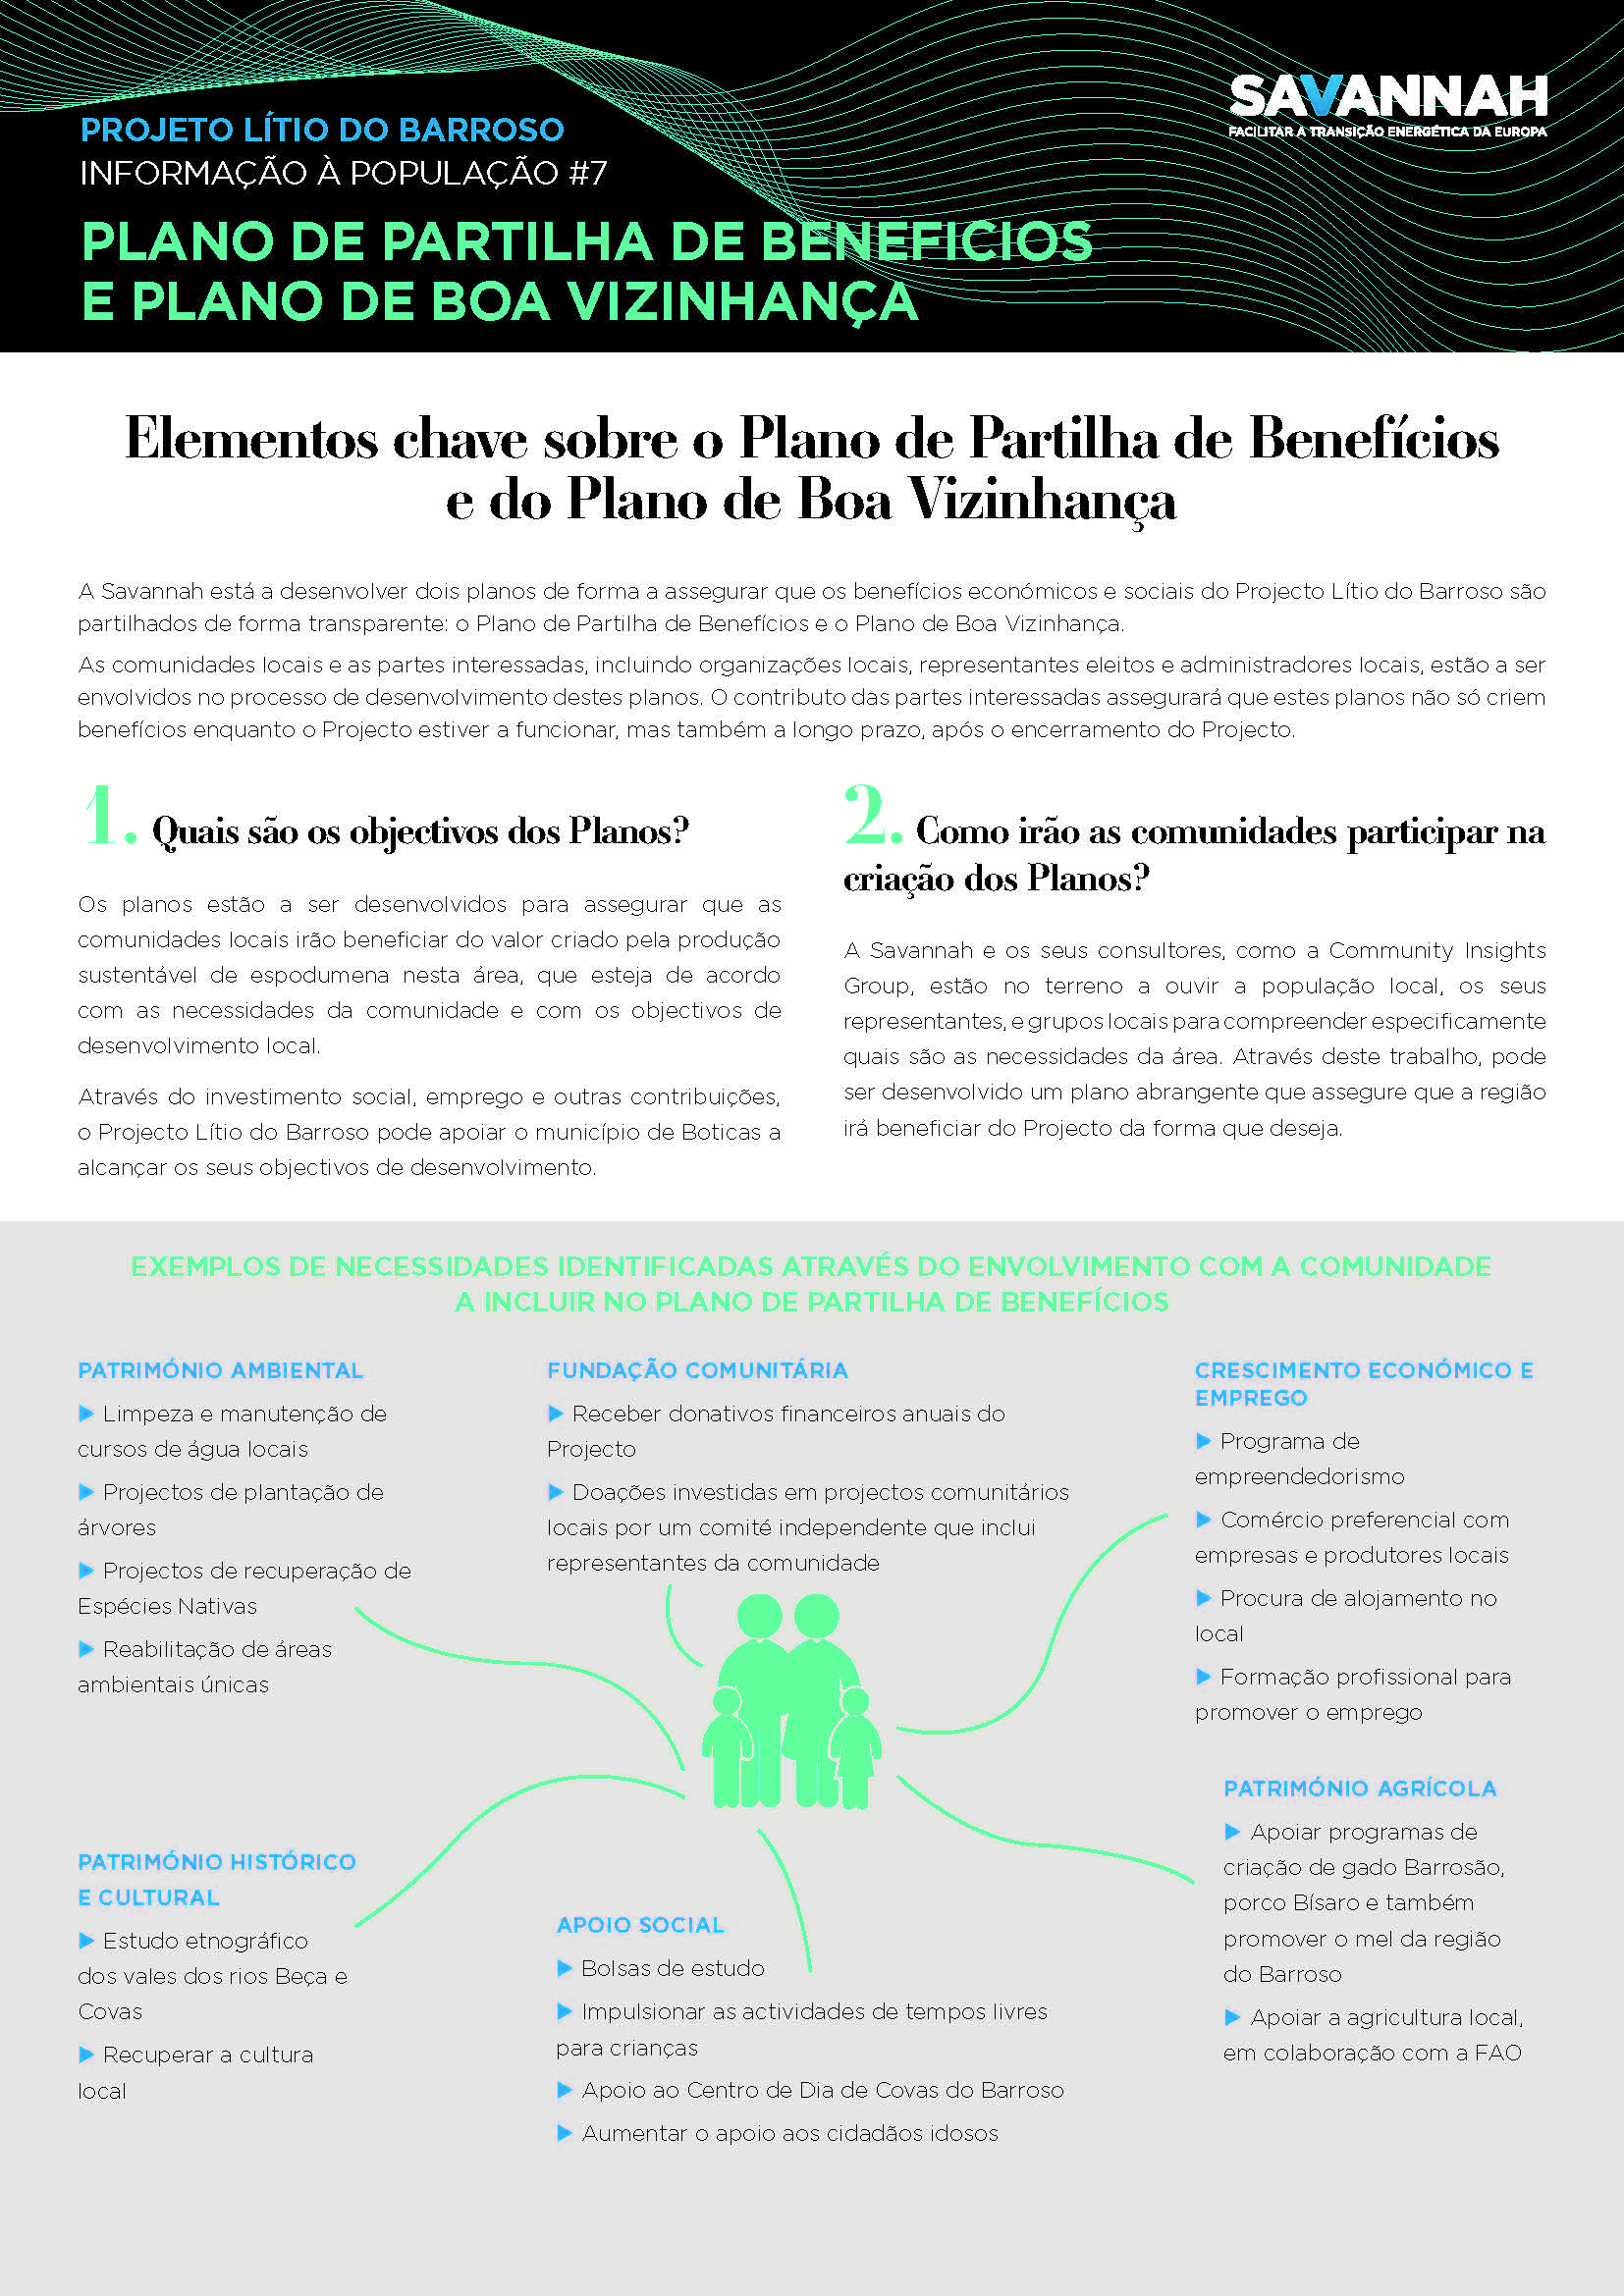 7. Folha Informativa sobre o Projecto Lítio do Barroso - Plano de Partilha de Benefícios - Plano de Boa Vizinhança